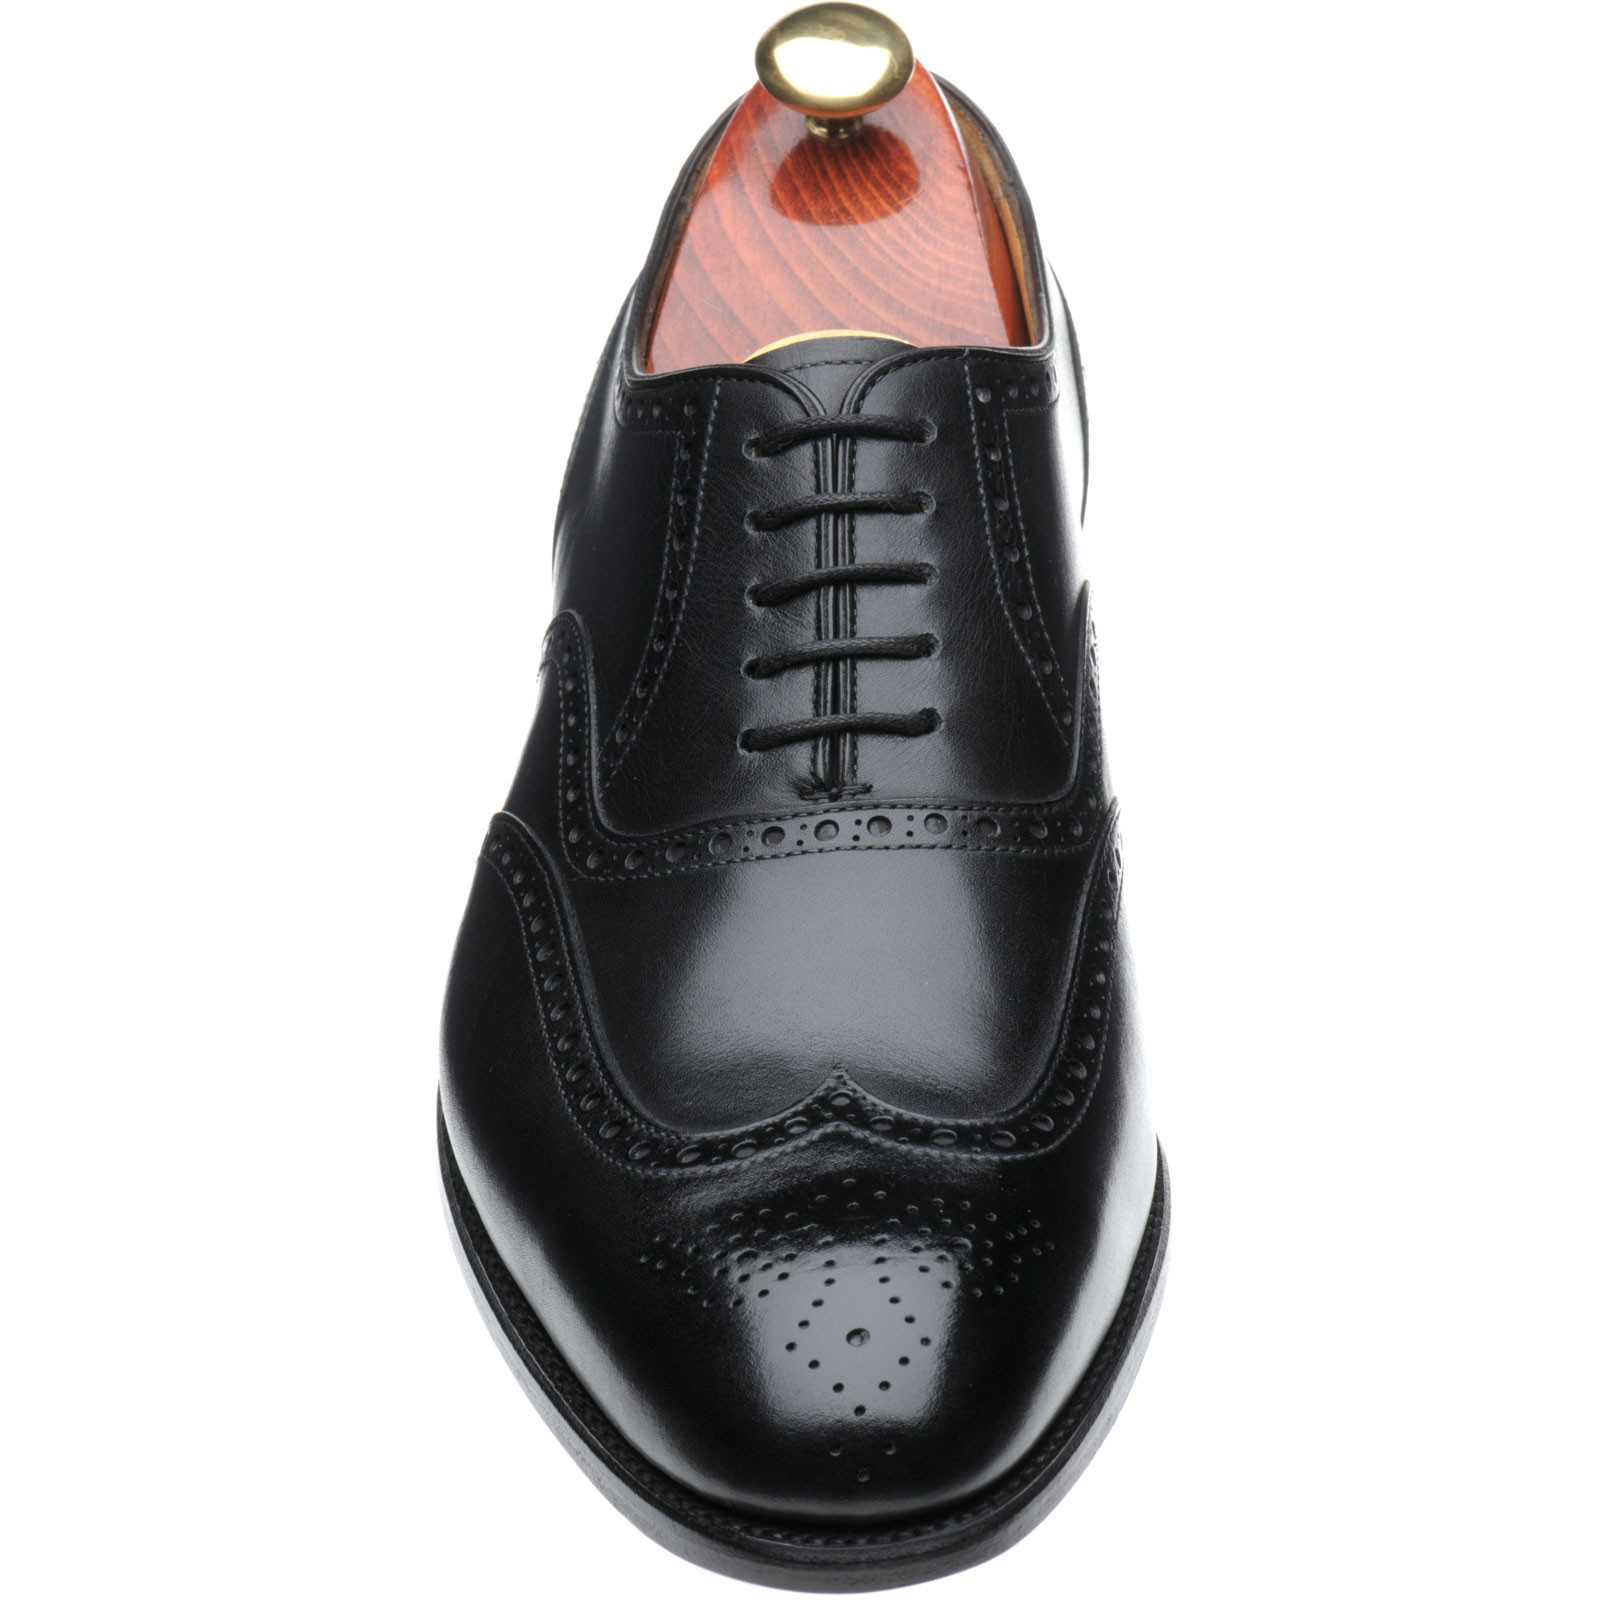 Carlos Santos shoes | Carlos Santos Patina Range | 7273 in Black Shadow ...